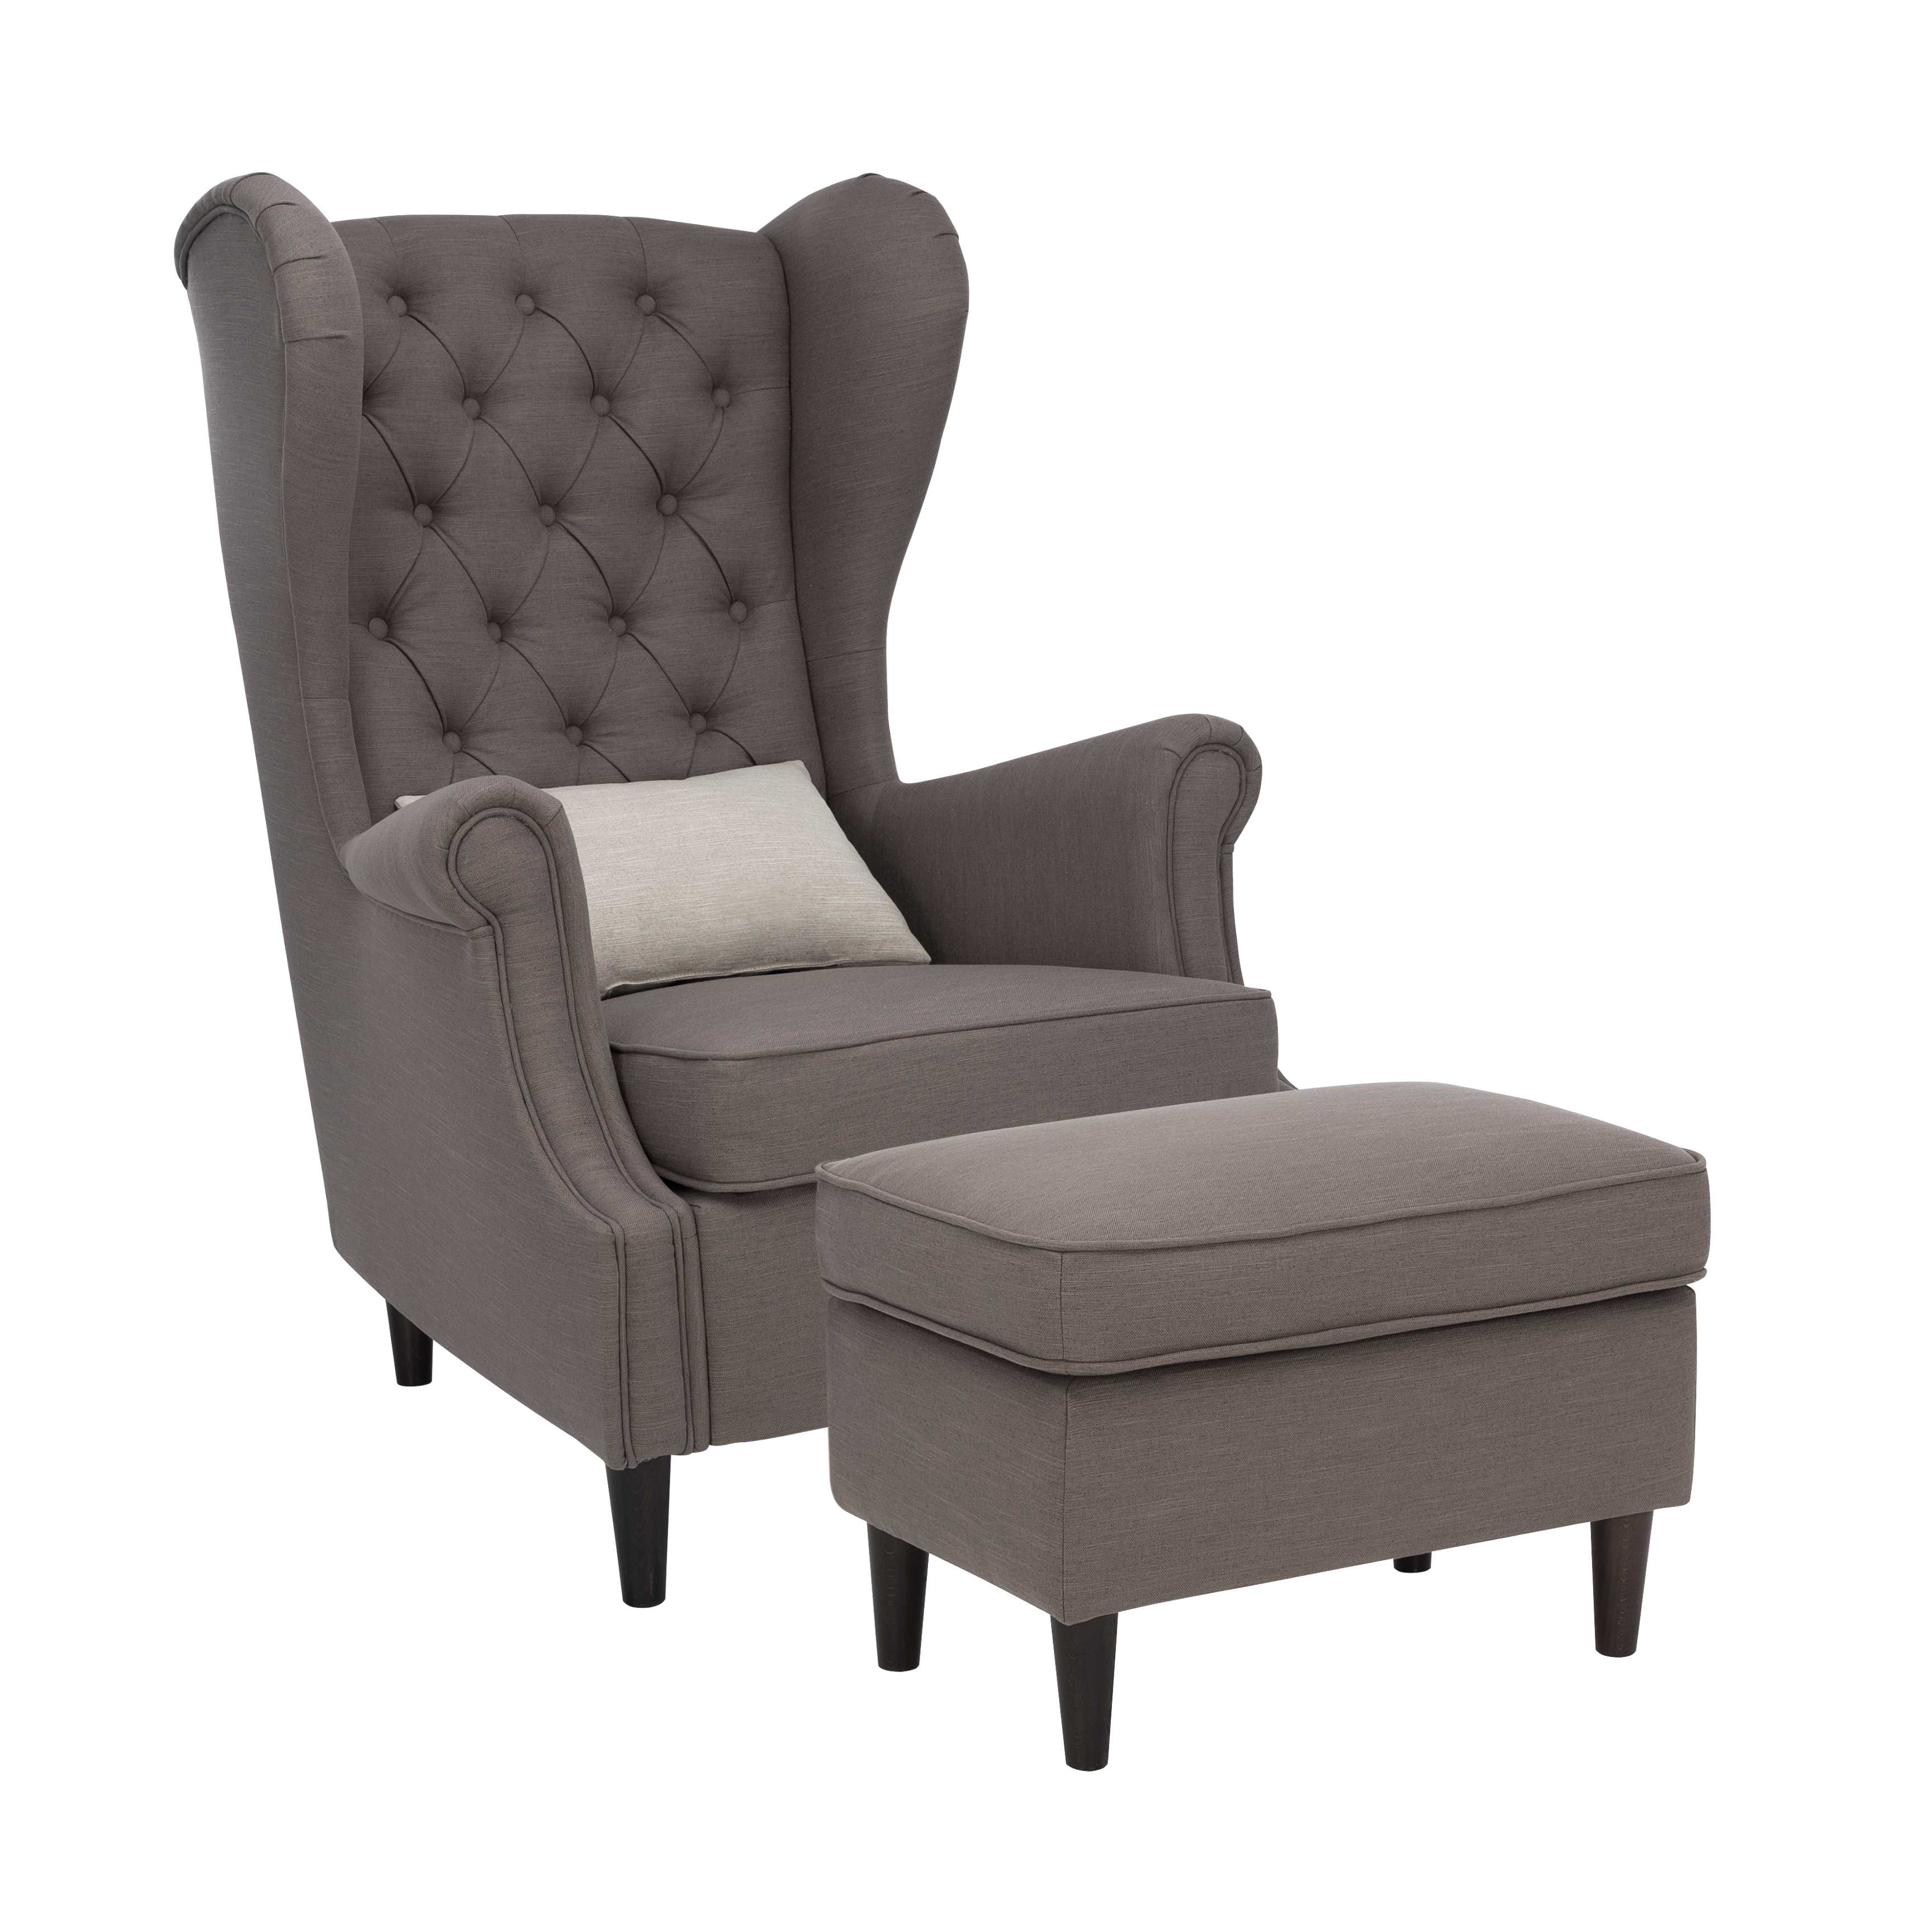 Кресла в стиле «прованс»: кресло-кровать, мягкая качалка, льняная подвесная мебель, велюровое изделие